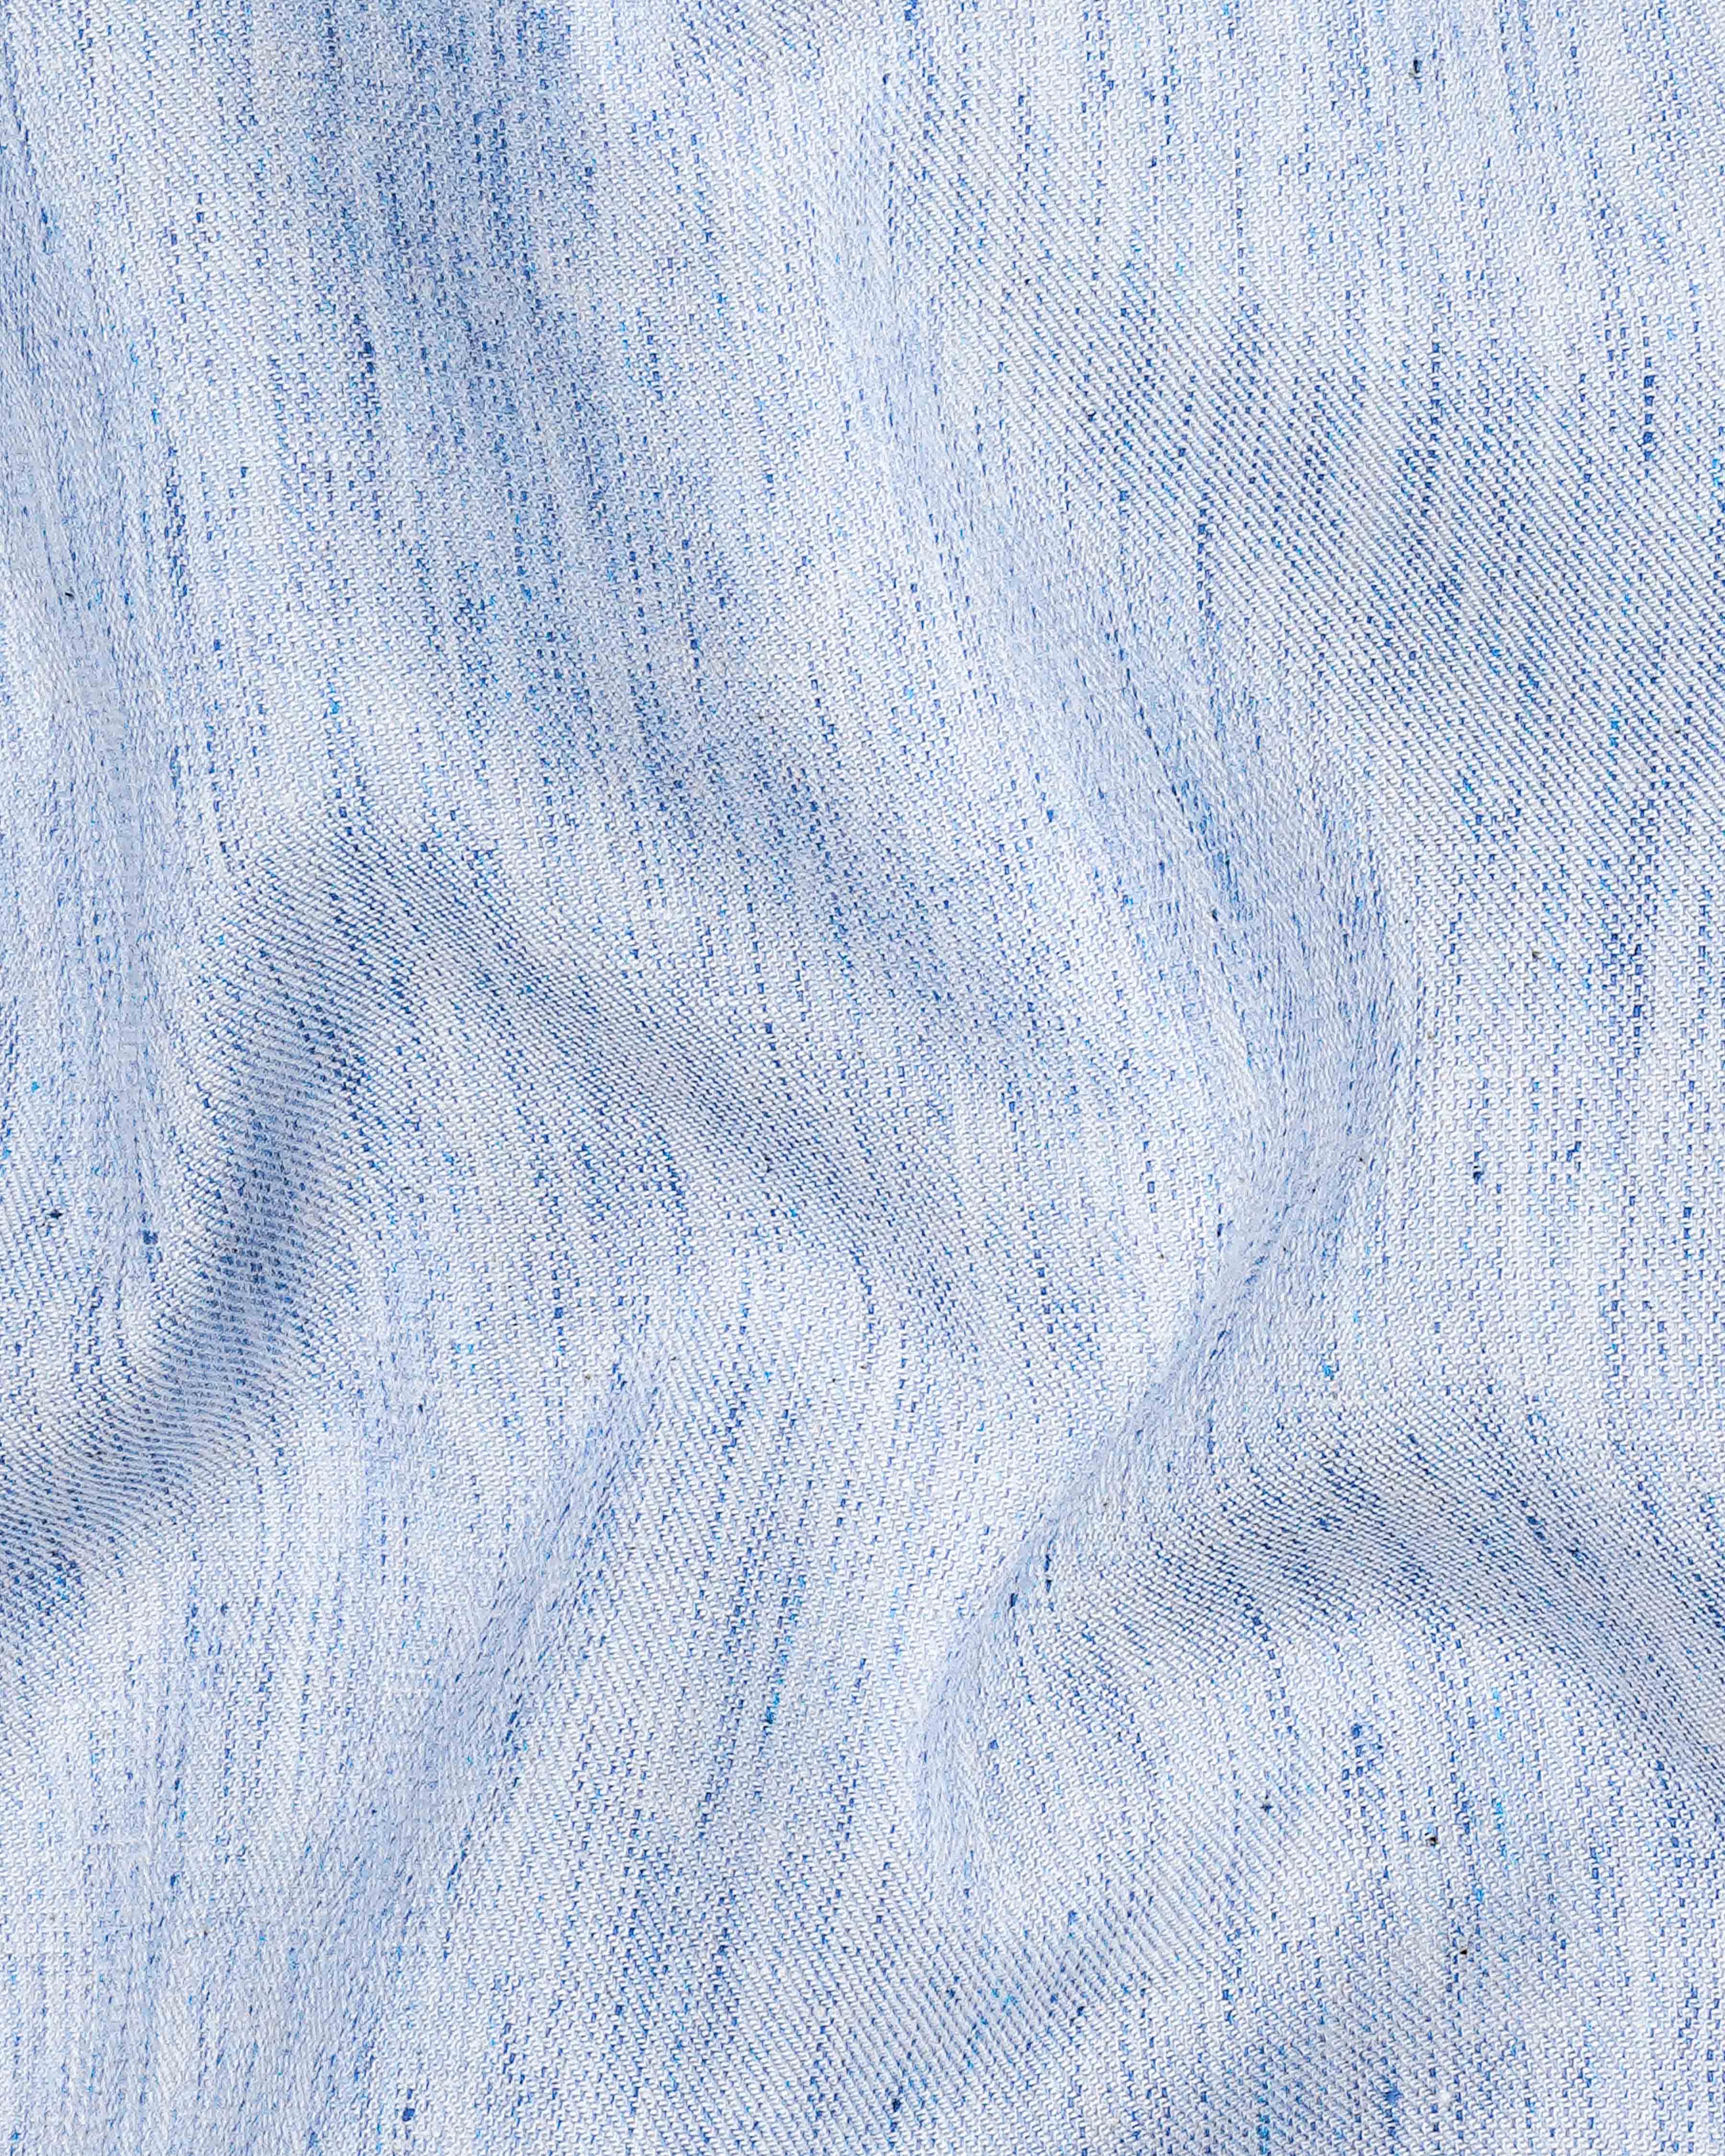 Tropical Blue Chambray Textured Premium Cotton Shirt 8321 -38,8321 -H-38,8321 -39,8321 -H-39,8321 -40,8321 -H-40,8321 -42,8321 -H-42,8321 -44,8321 -H-44,8321 -46,8321 -H-46,8321 -48,8321 -H-48,8321 -50,8321 -H-50,8321 -52,8321 -H-52